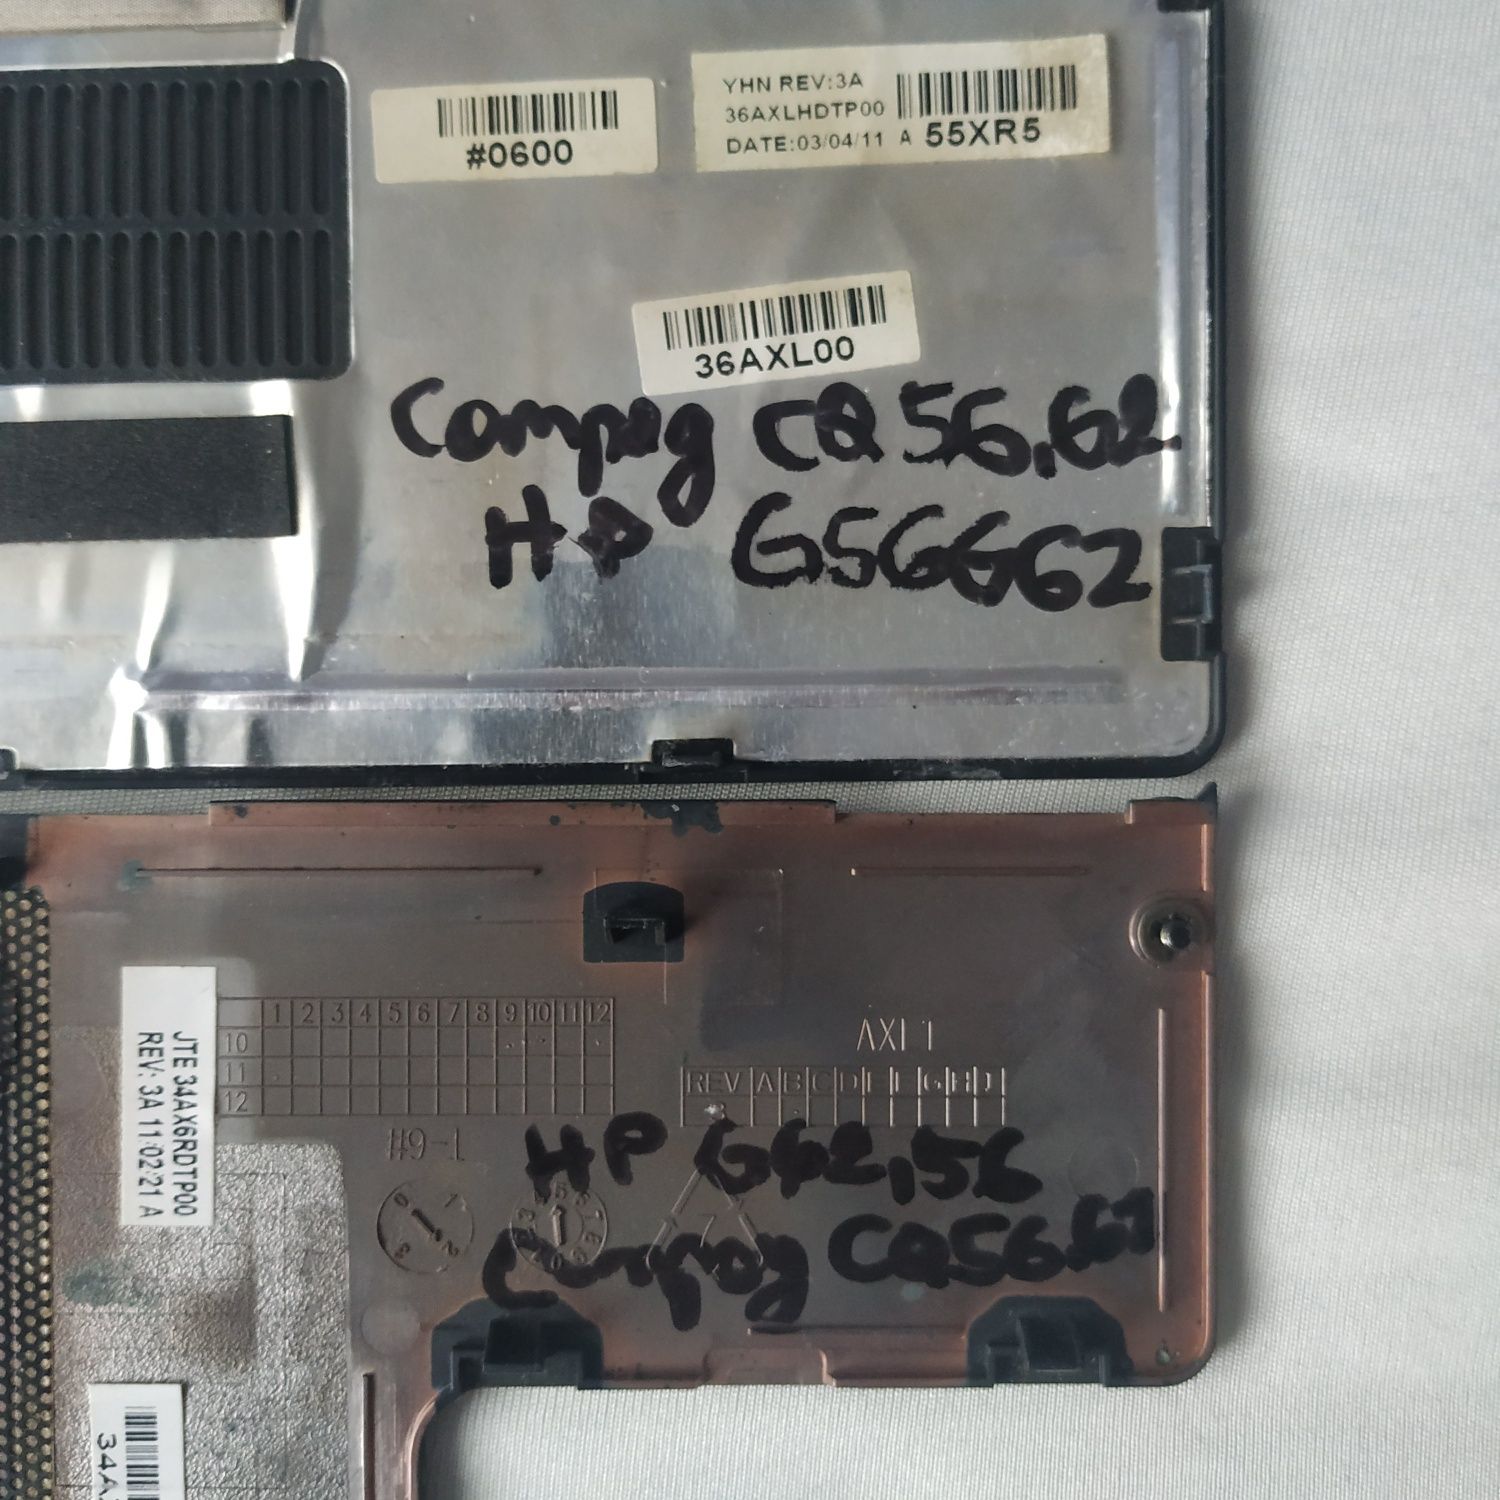 Capac Hdd și RAM HP G56 G62 Compaq  CQ56 CQ62